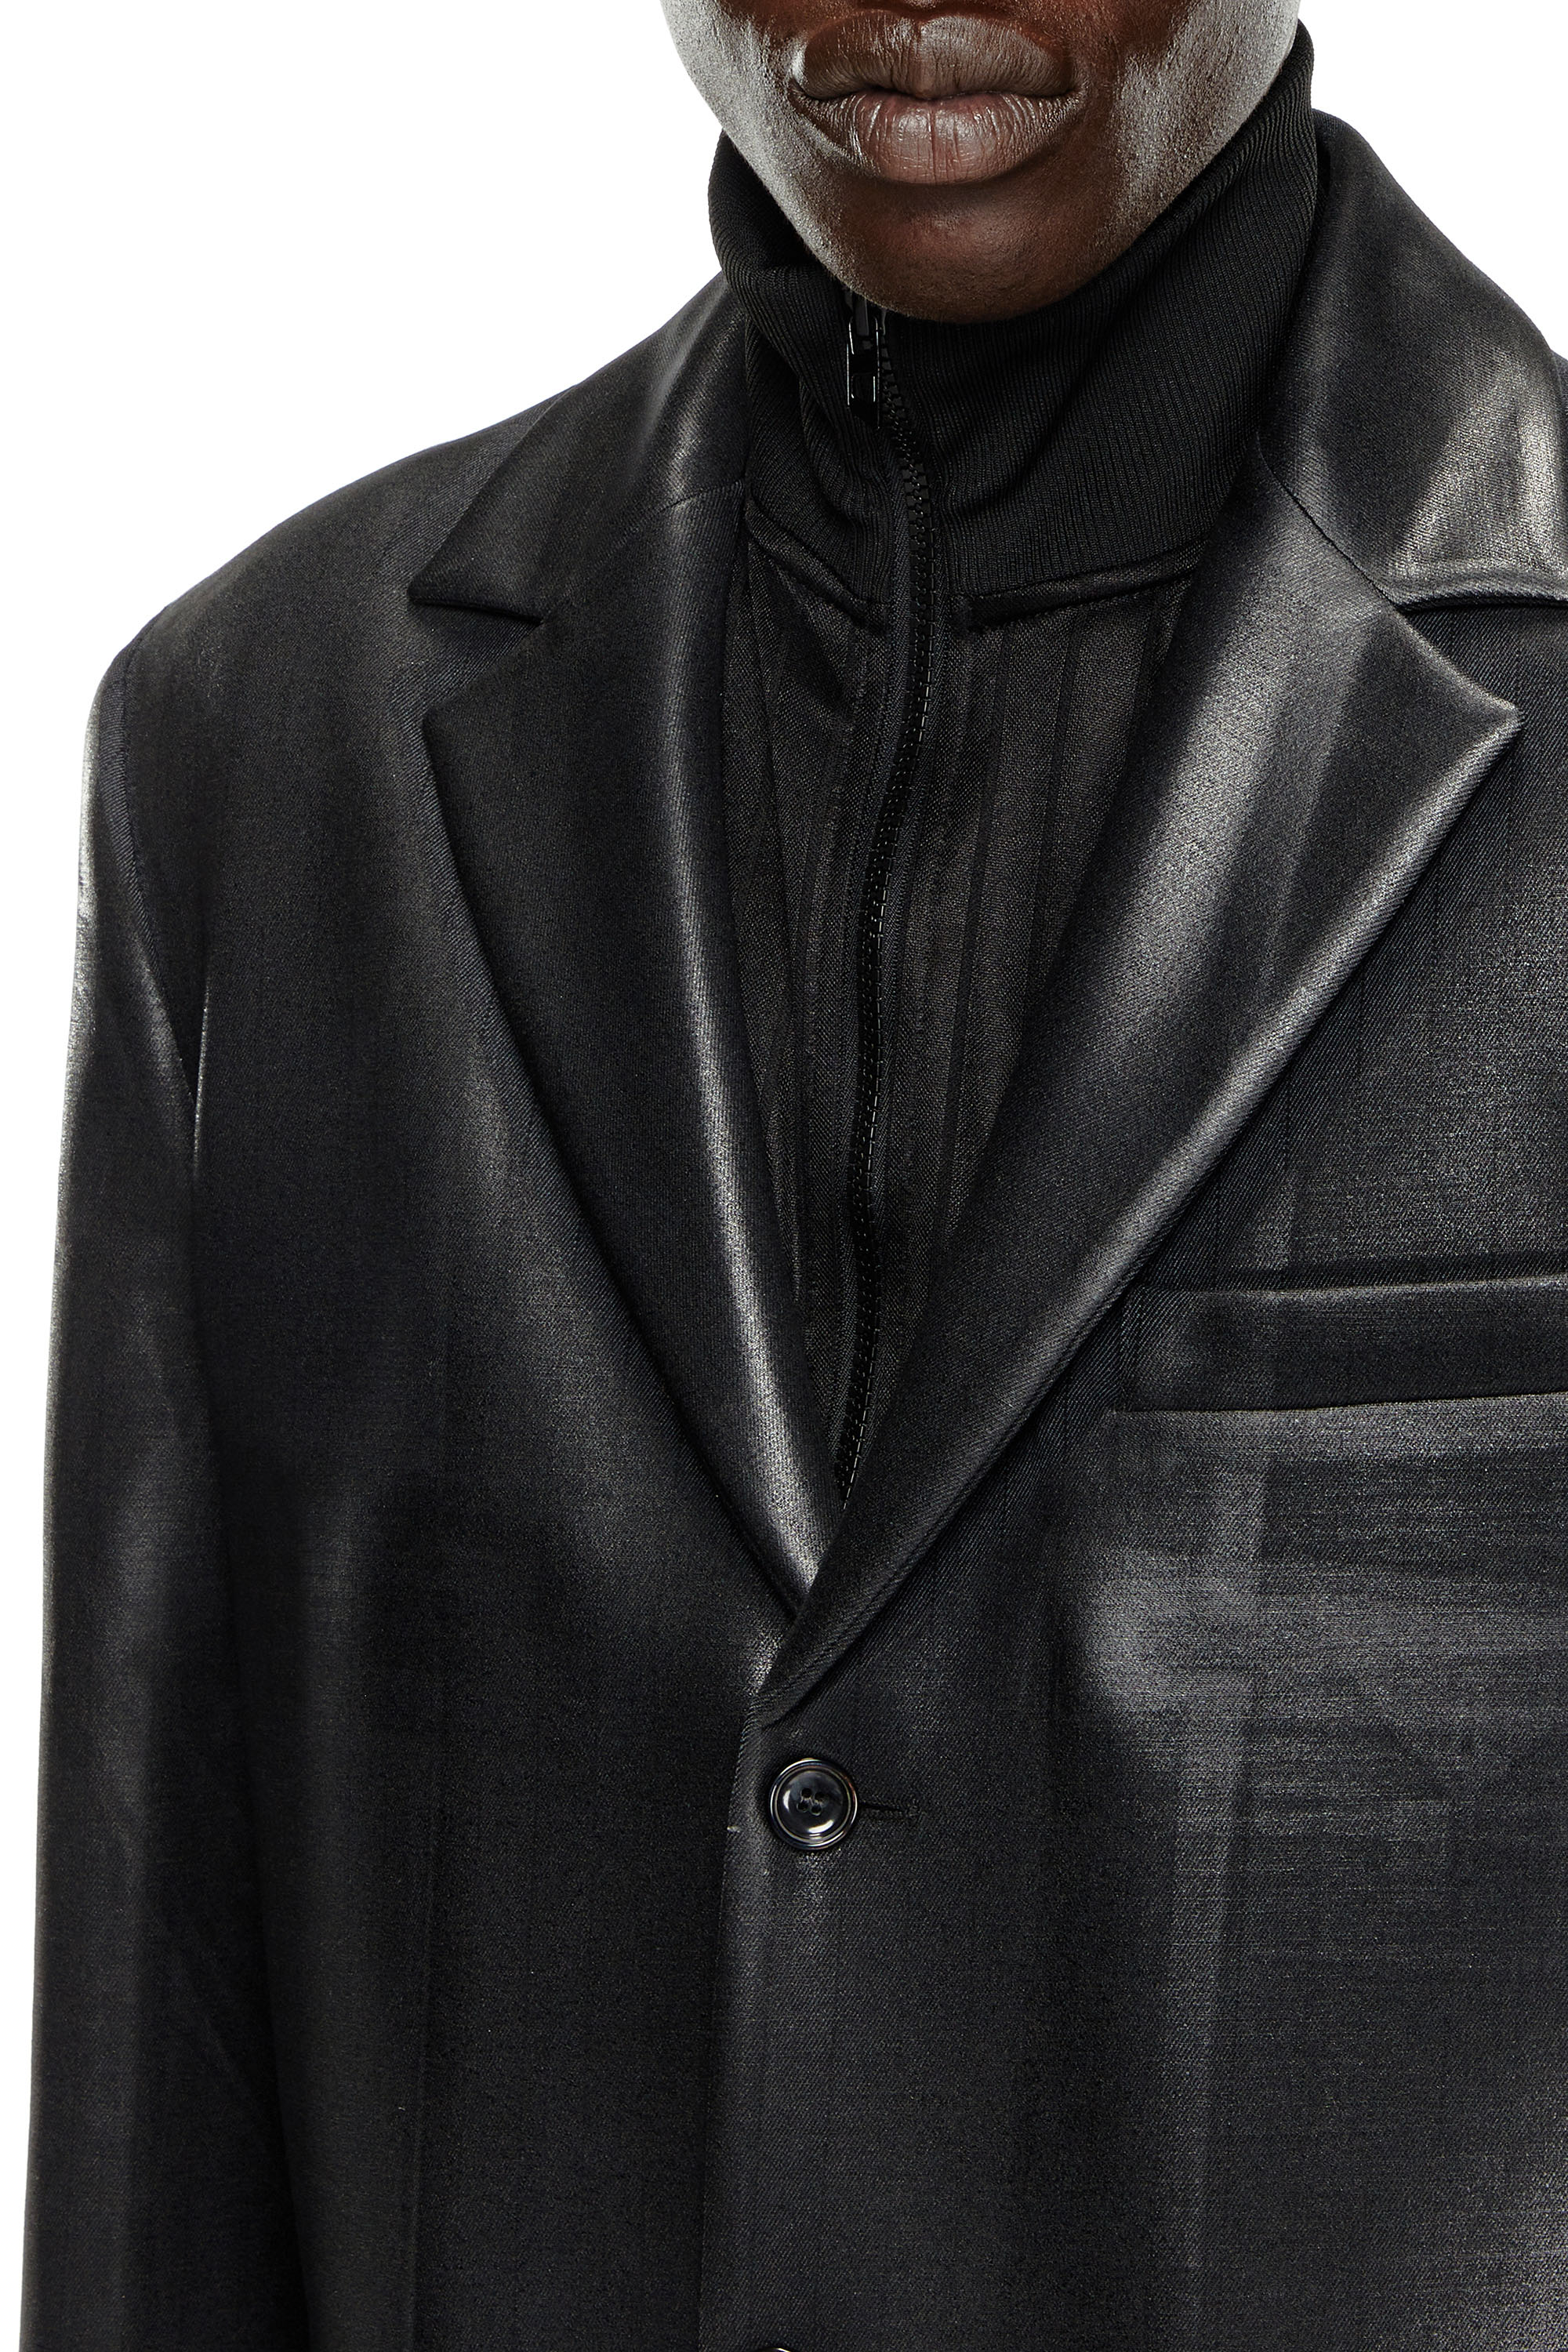 Diesel - J-DENNER, Male Coat in pinstriped cool wool in Black - Image 4